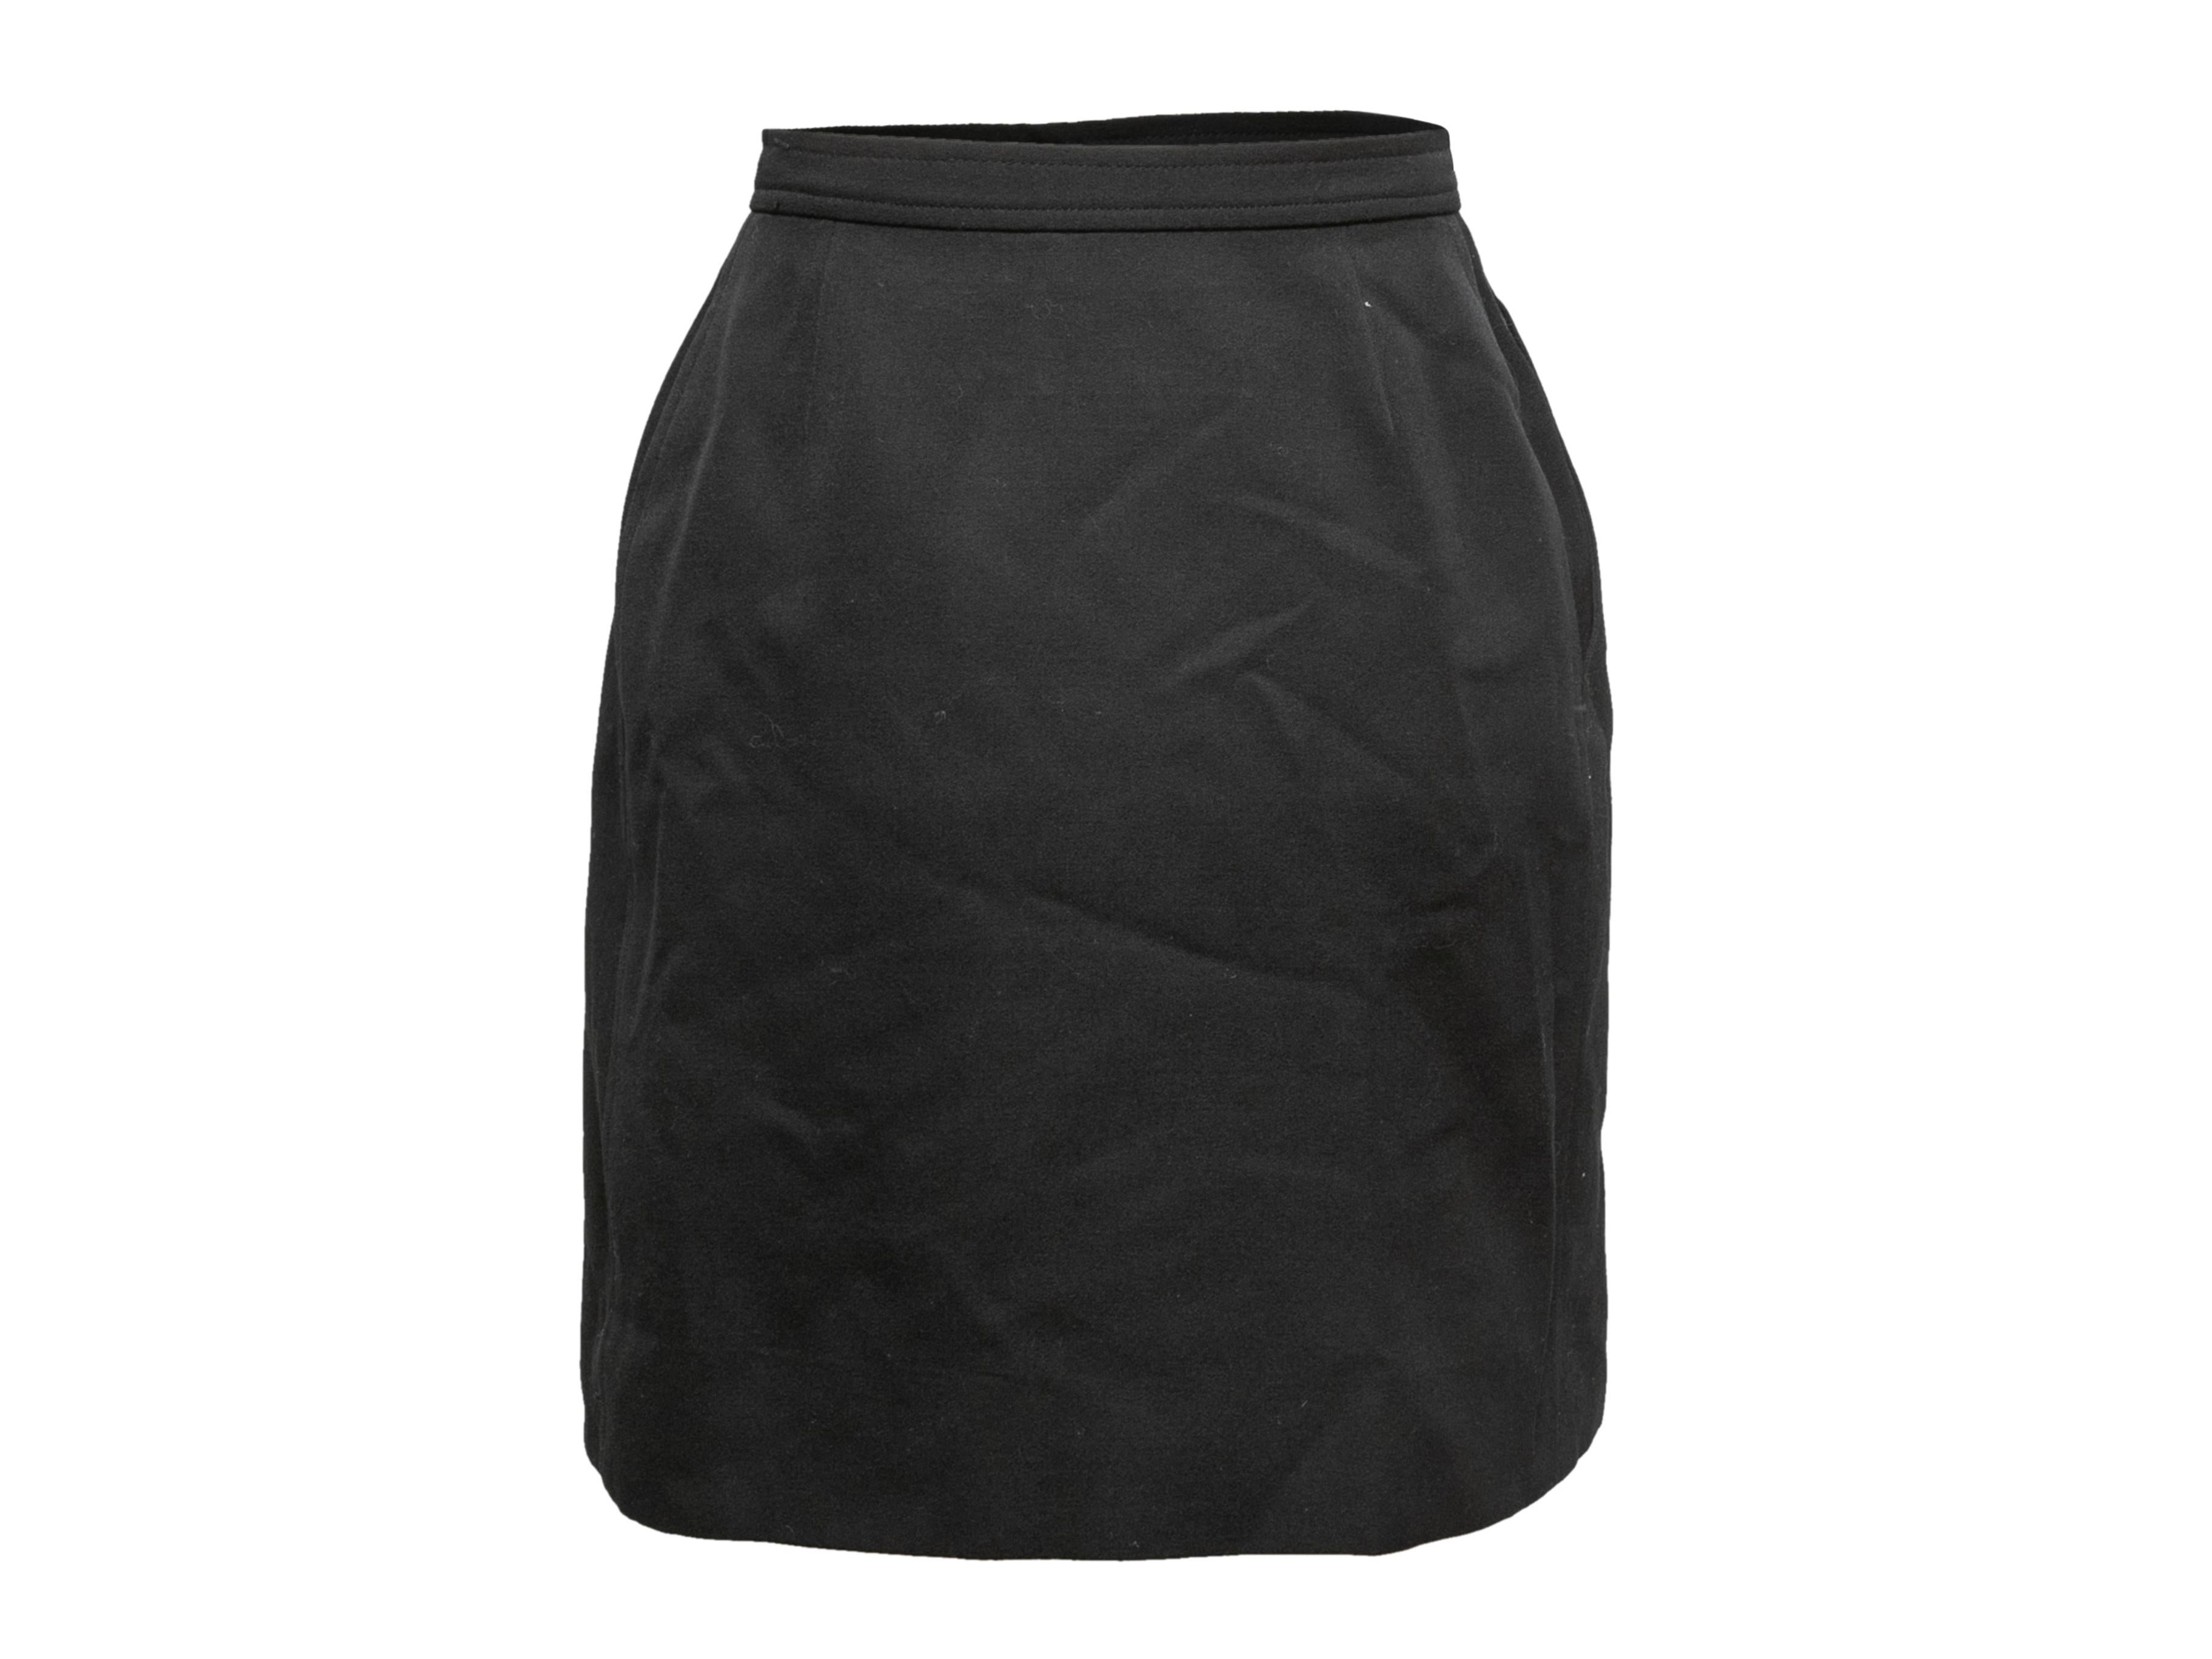 Vintage black wool wrap skirt by Saint Laurent. Hip pocket. Side closure. Designer size 34. 24